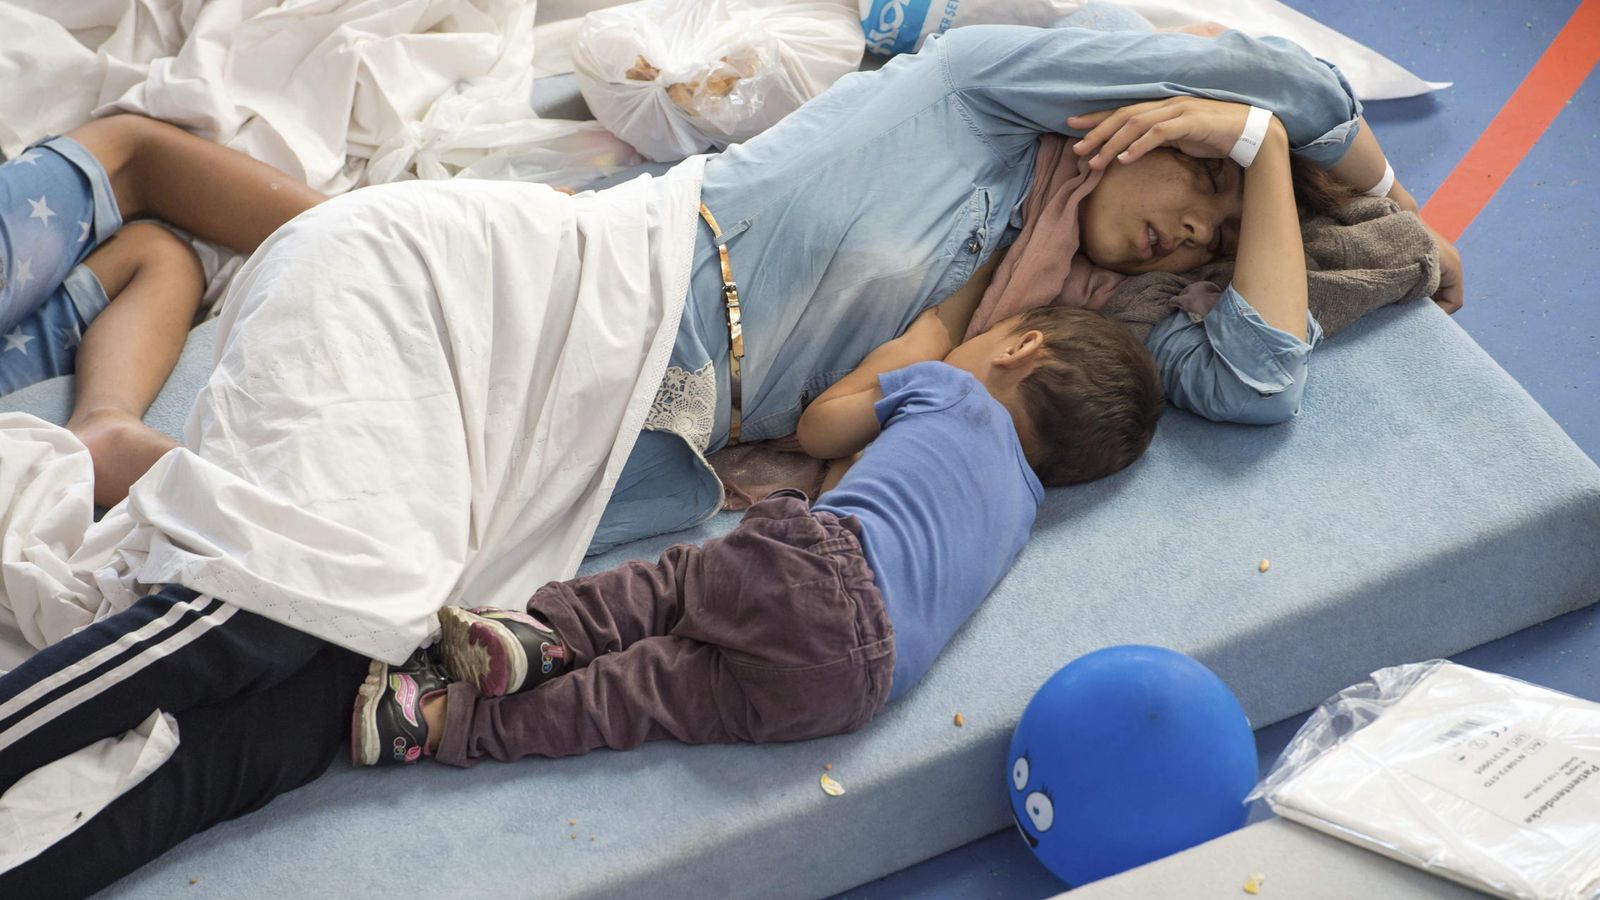 Foto: Refugiados alojados en colchones en Alemania (Efe).